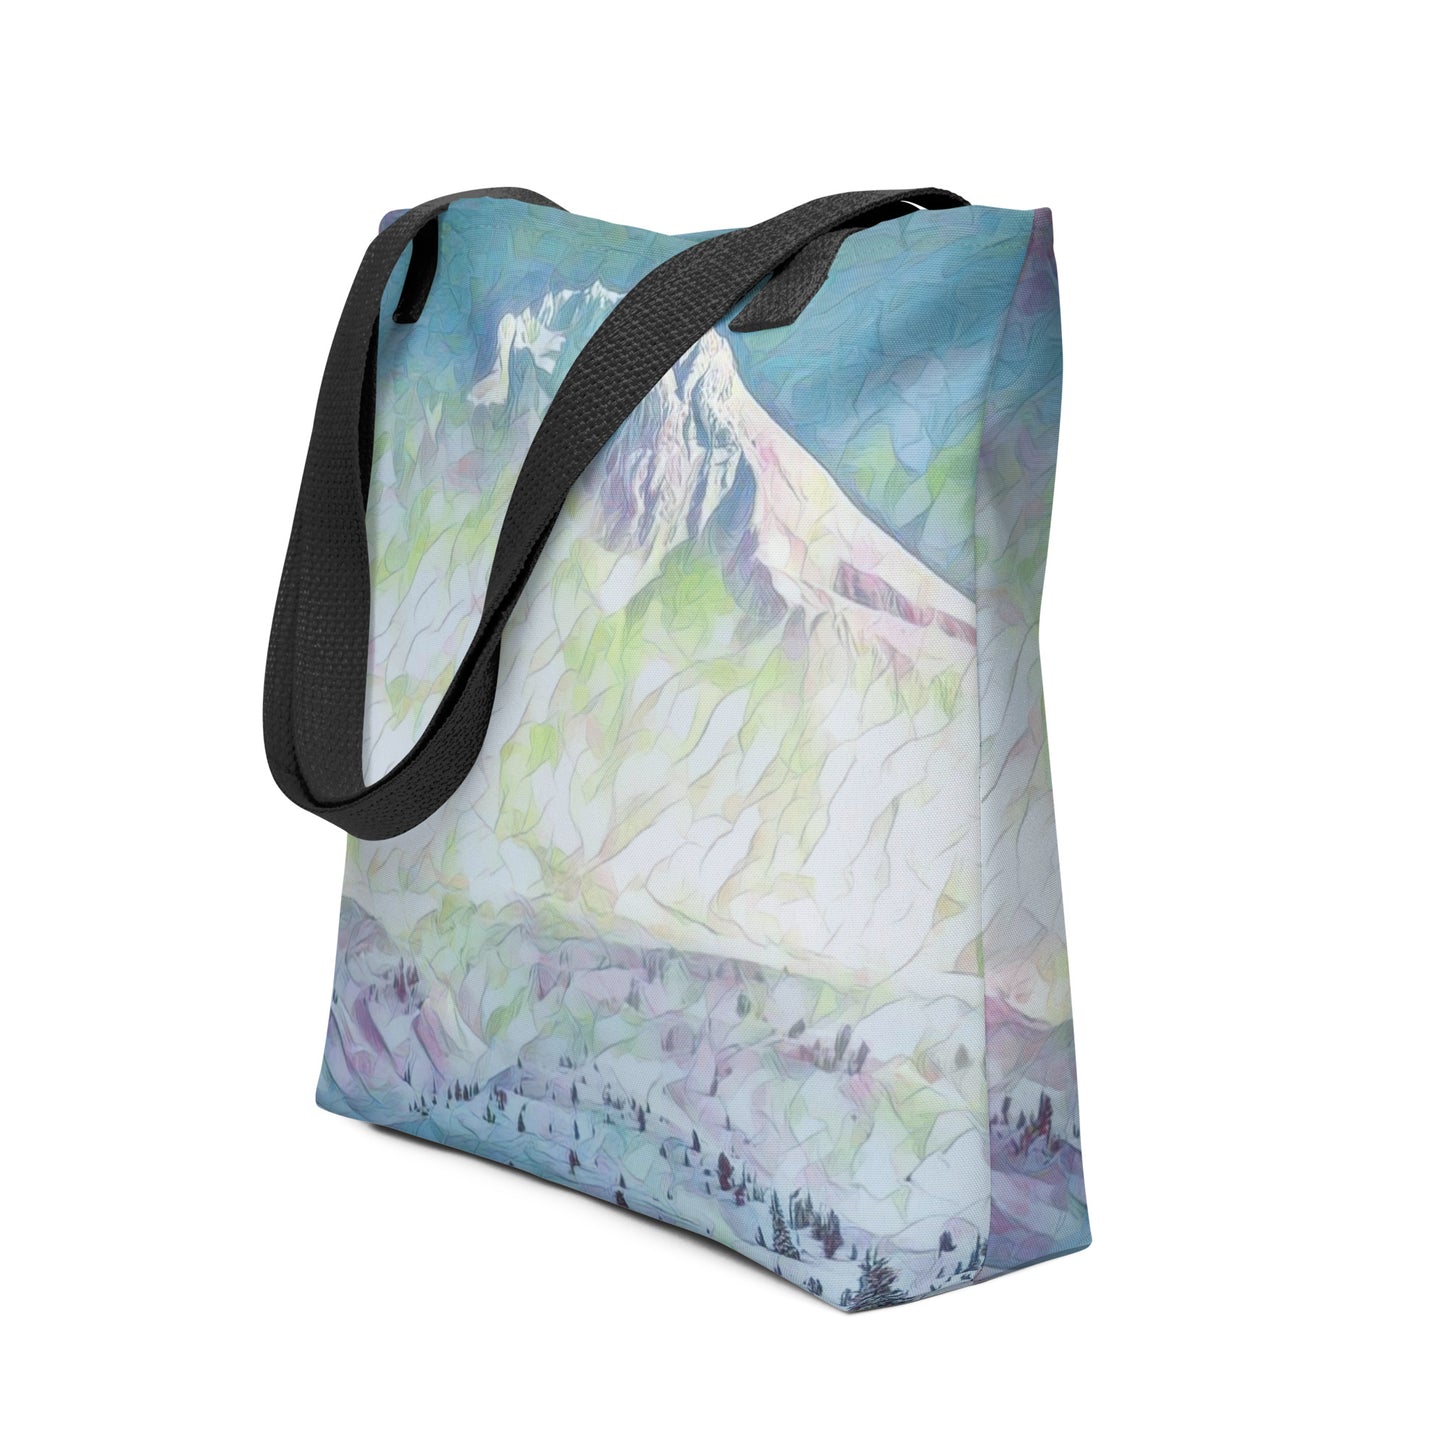 Mount Hood - Digital Art - Tote bag